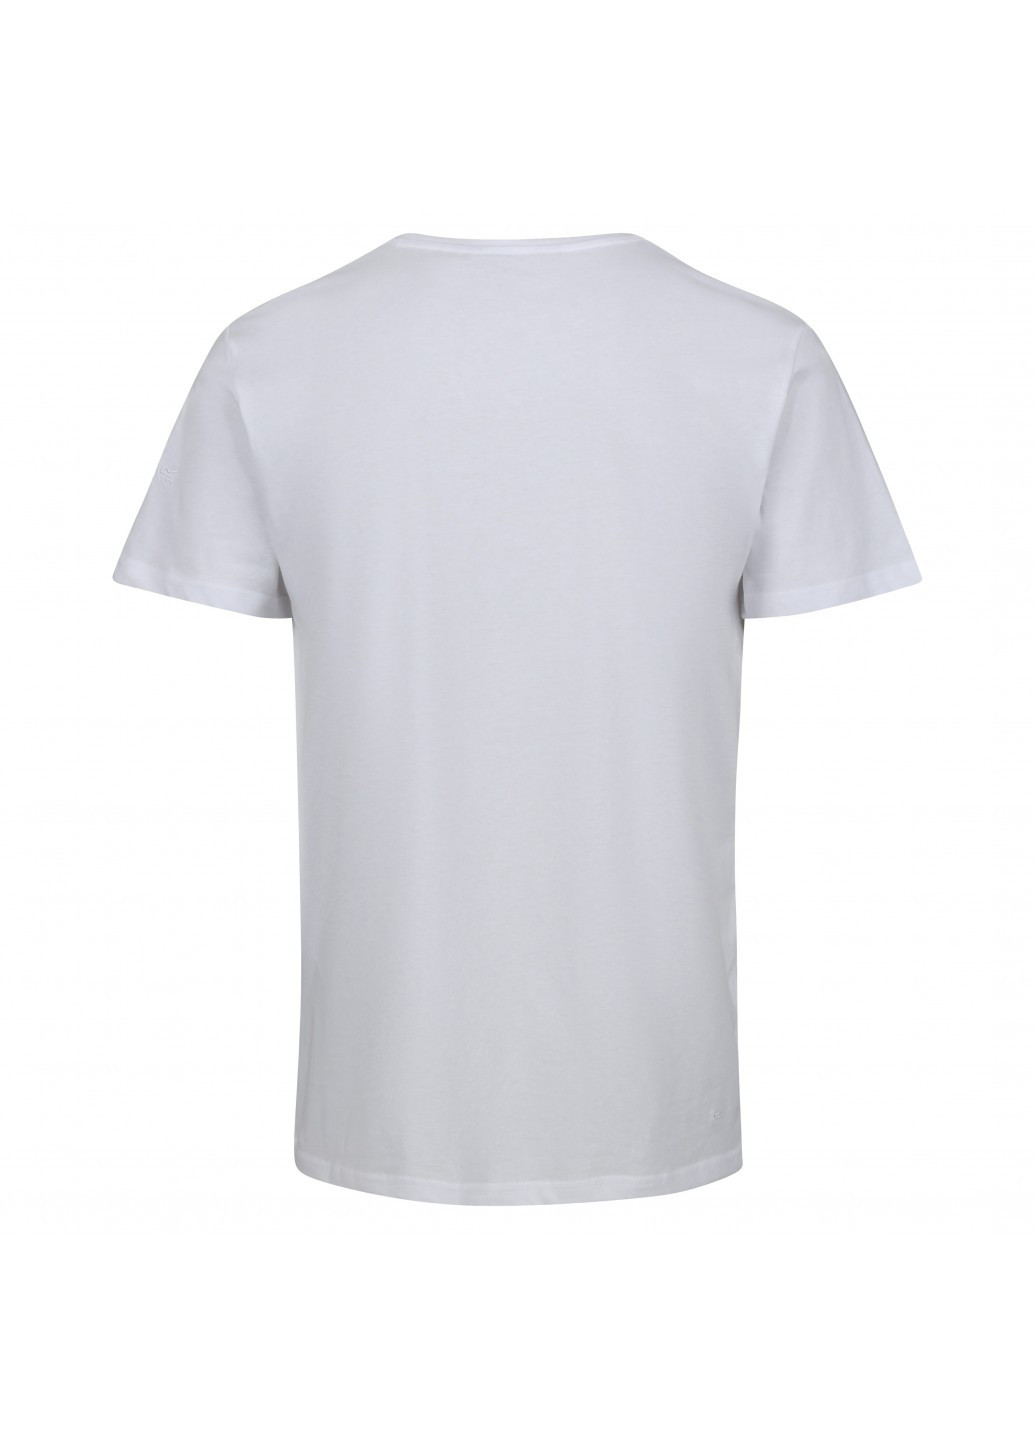 Белая футболка Regatta RMT263-X9W